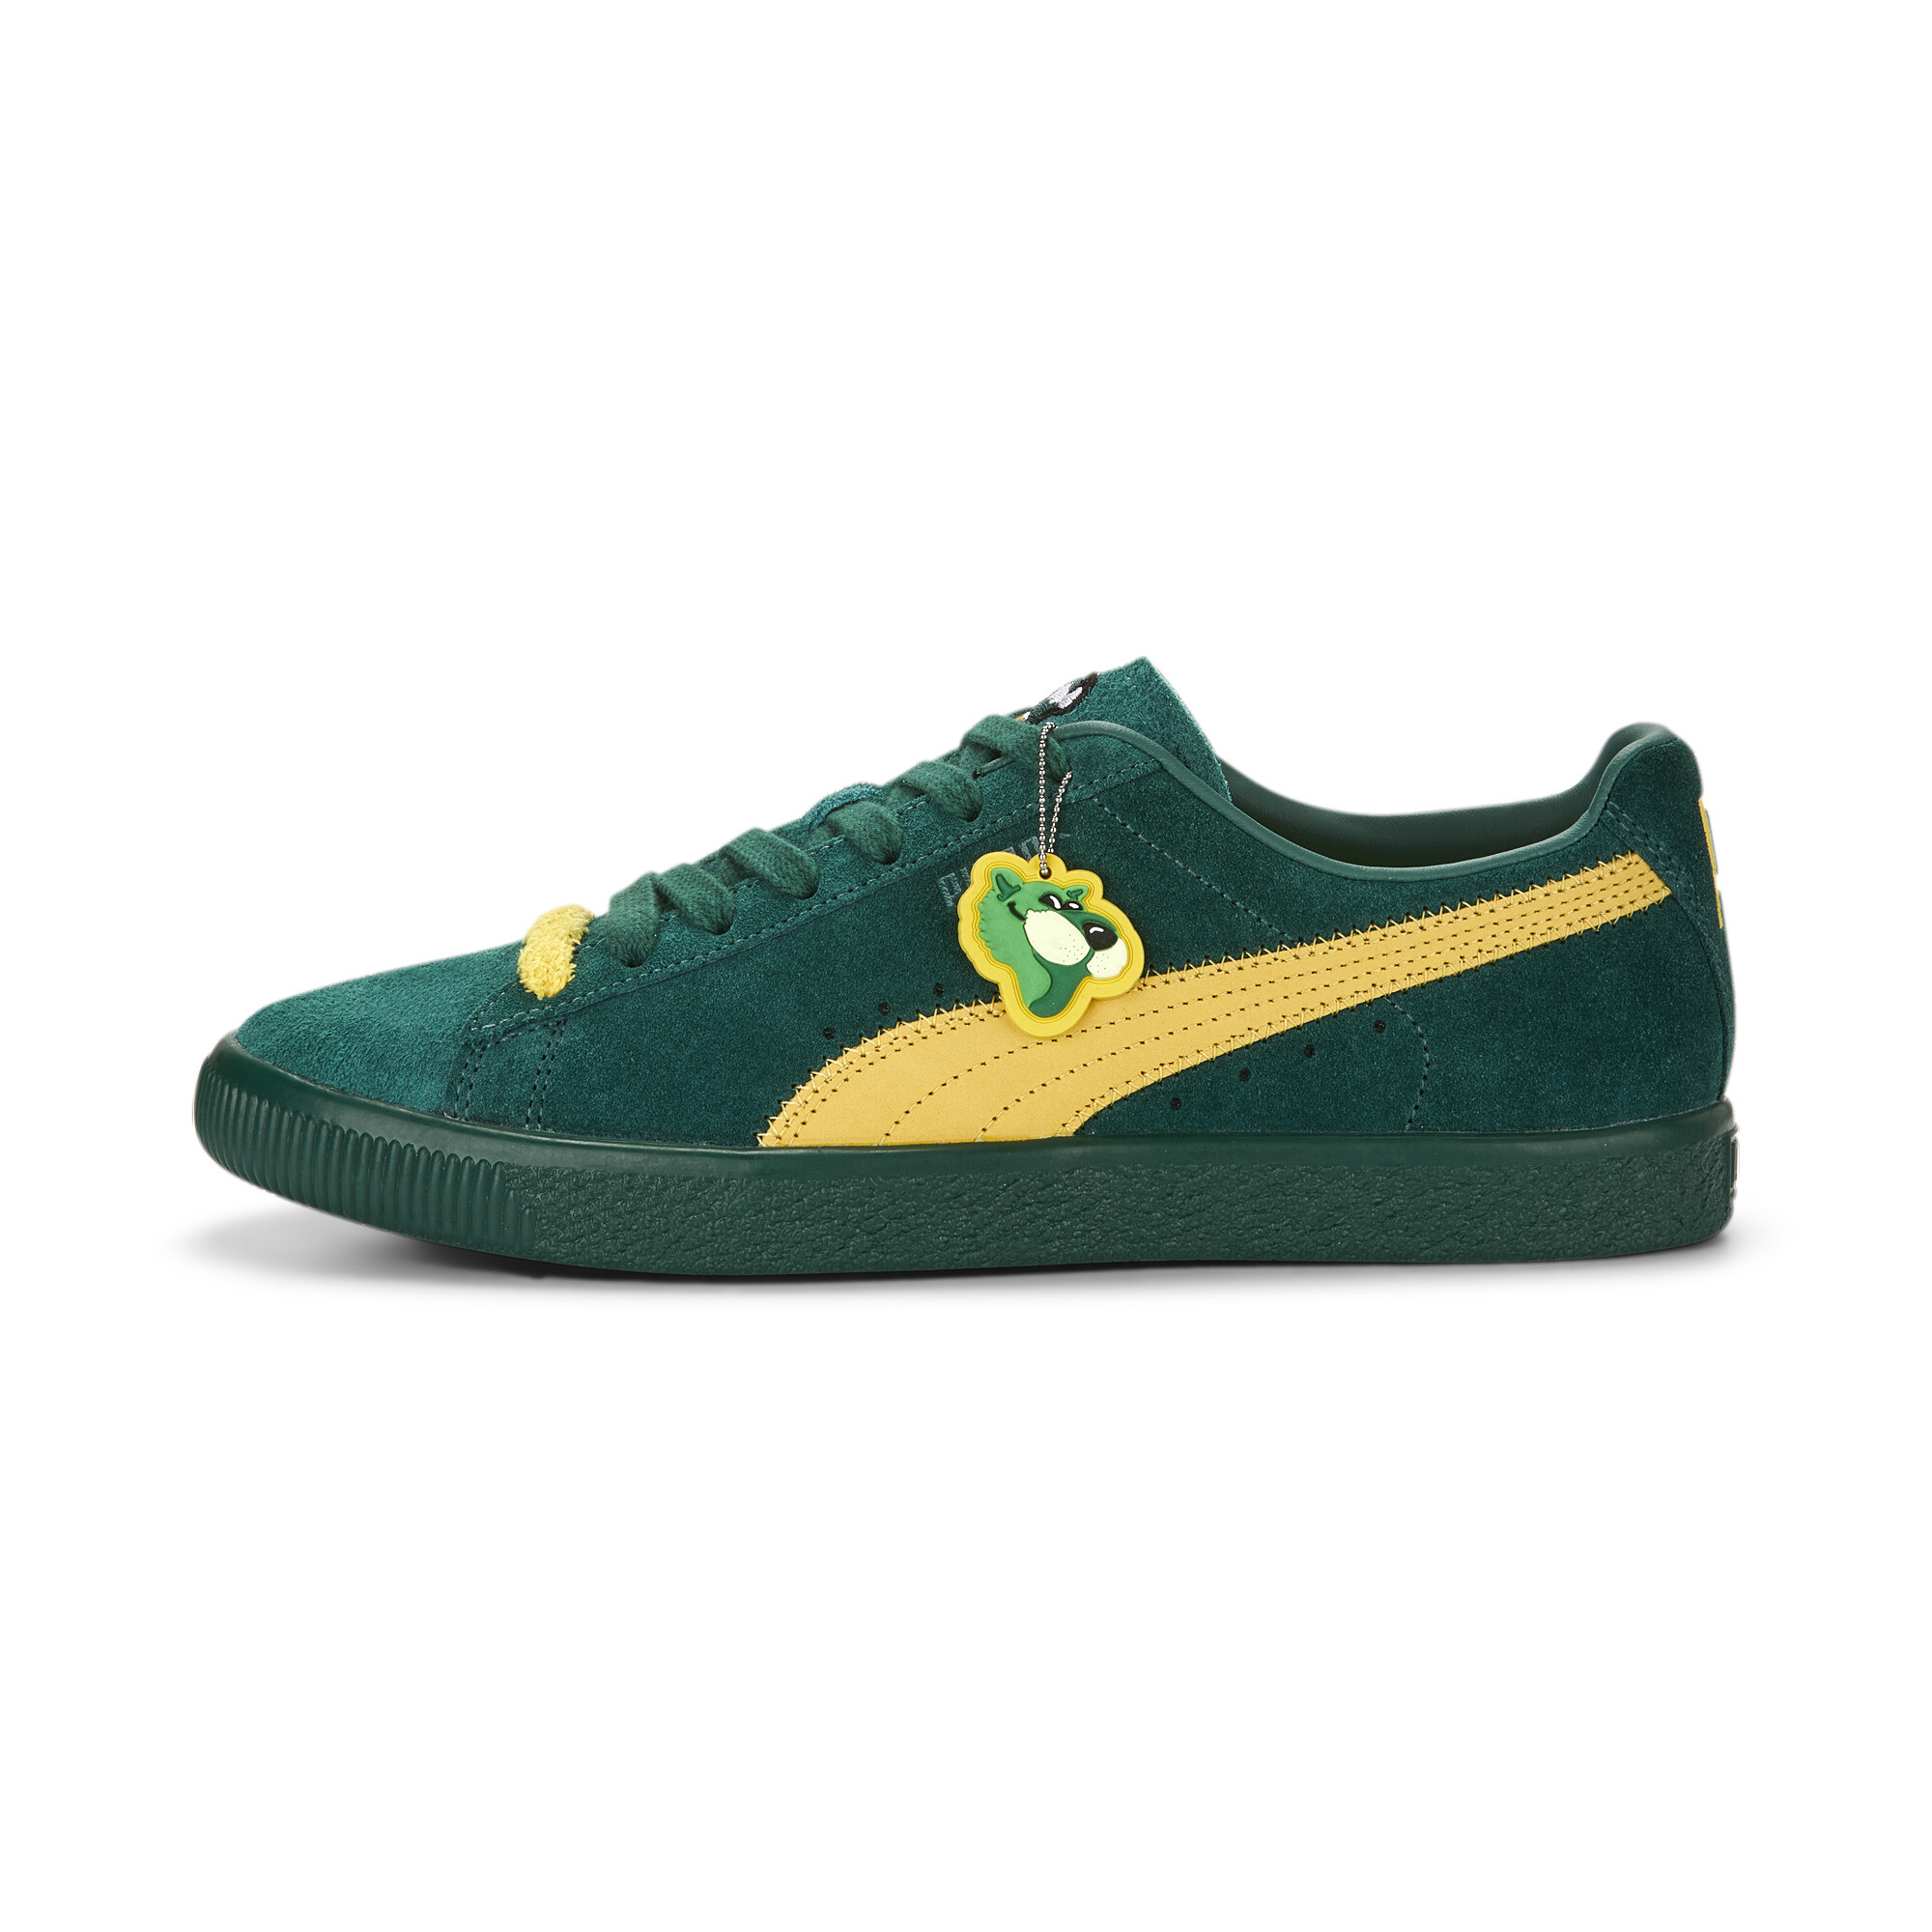 Men's Clyde Super PUMA Sneakers In 40 - Green, Size EU 46